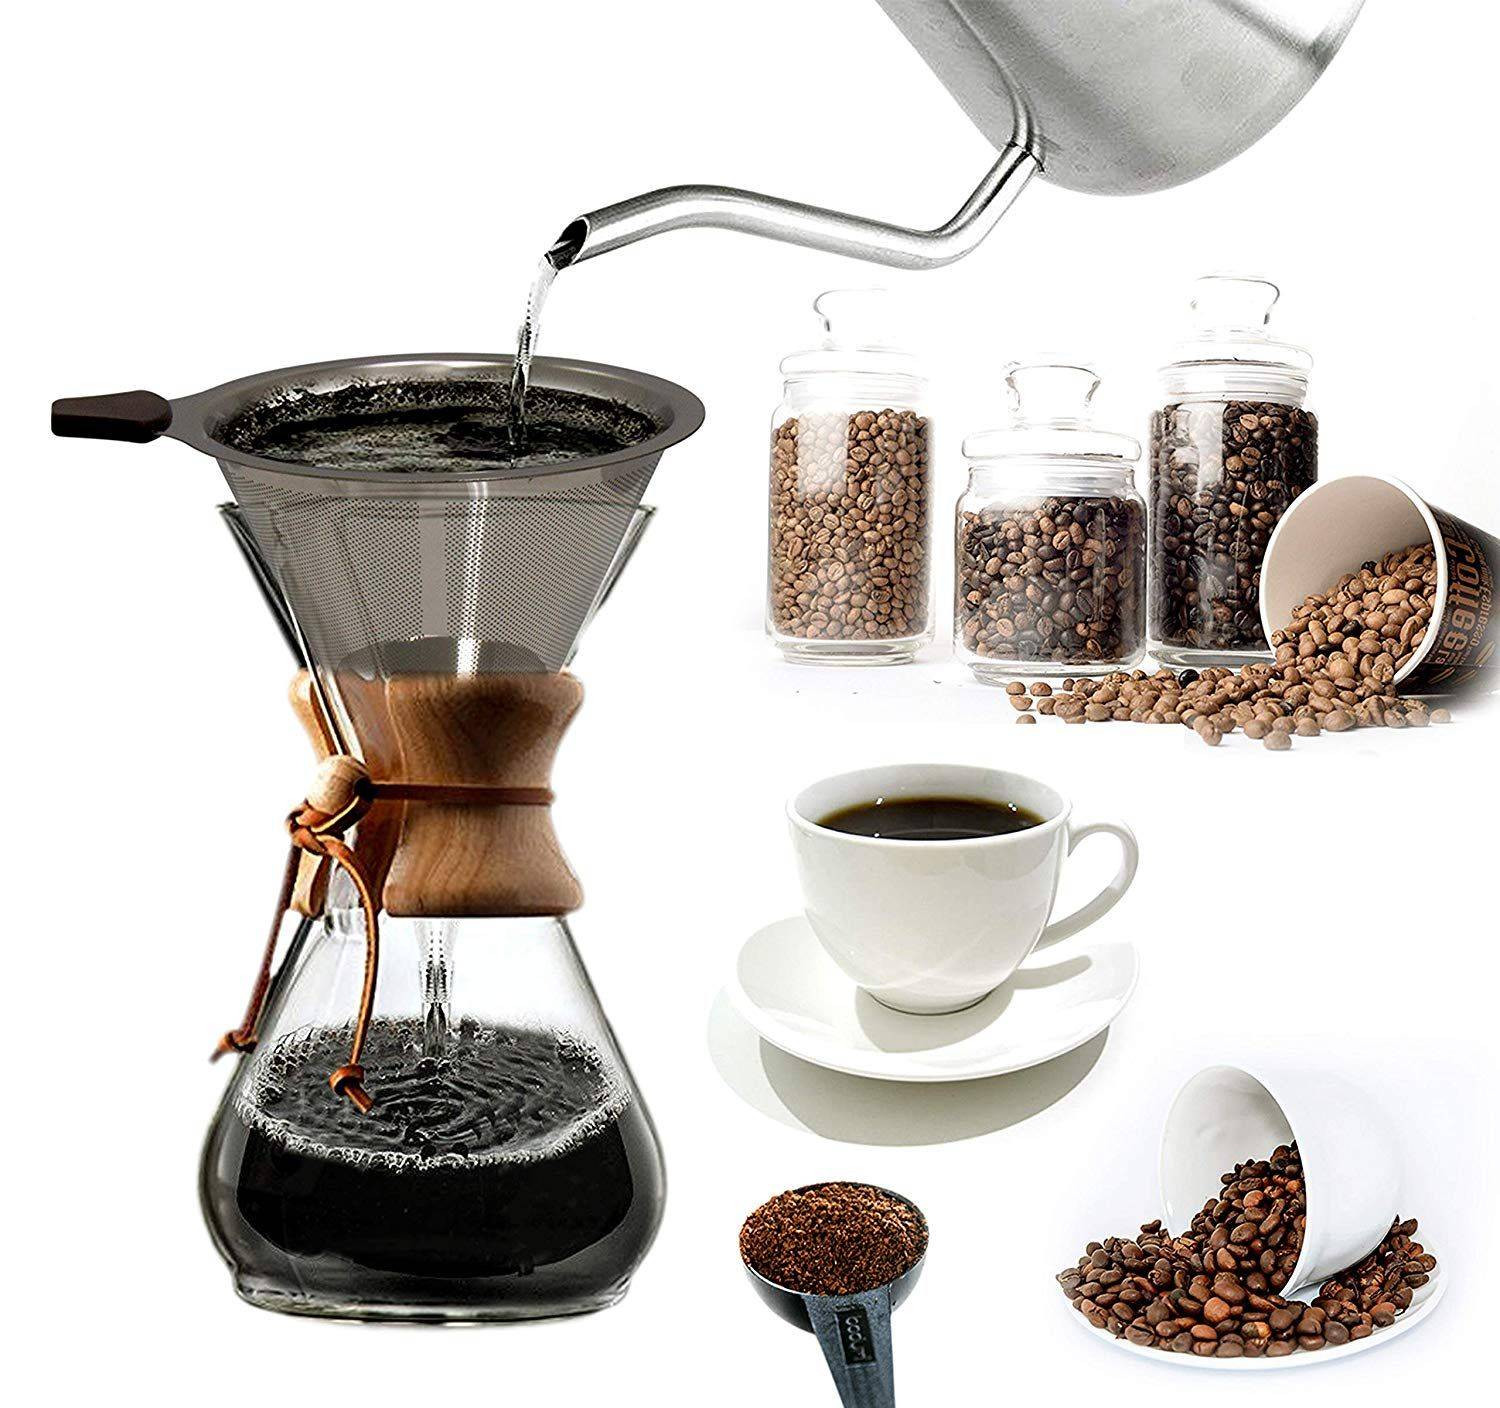 Как заваривают кофе во вьетнаме и что такое вьетнамская кофеварка